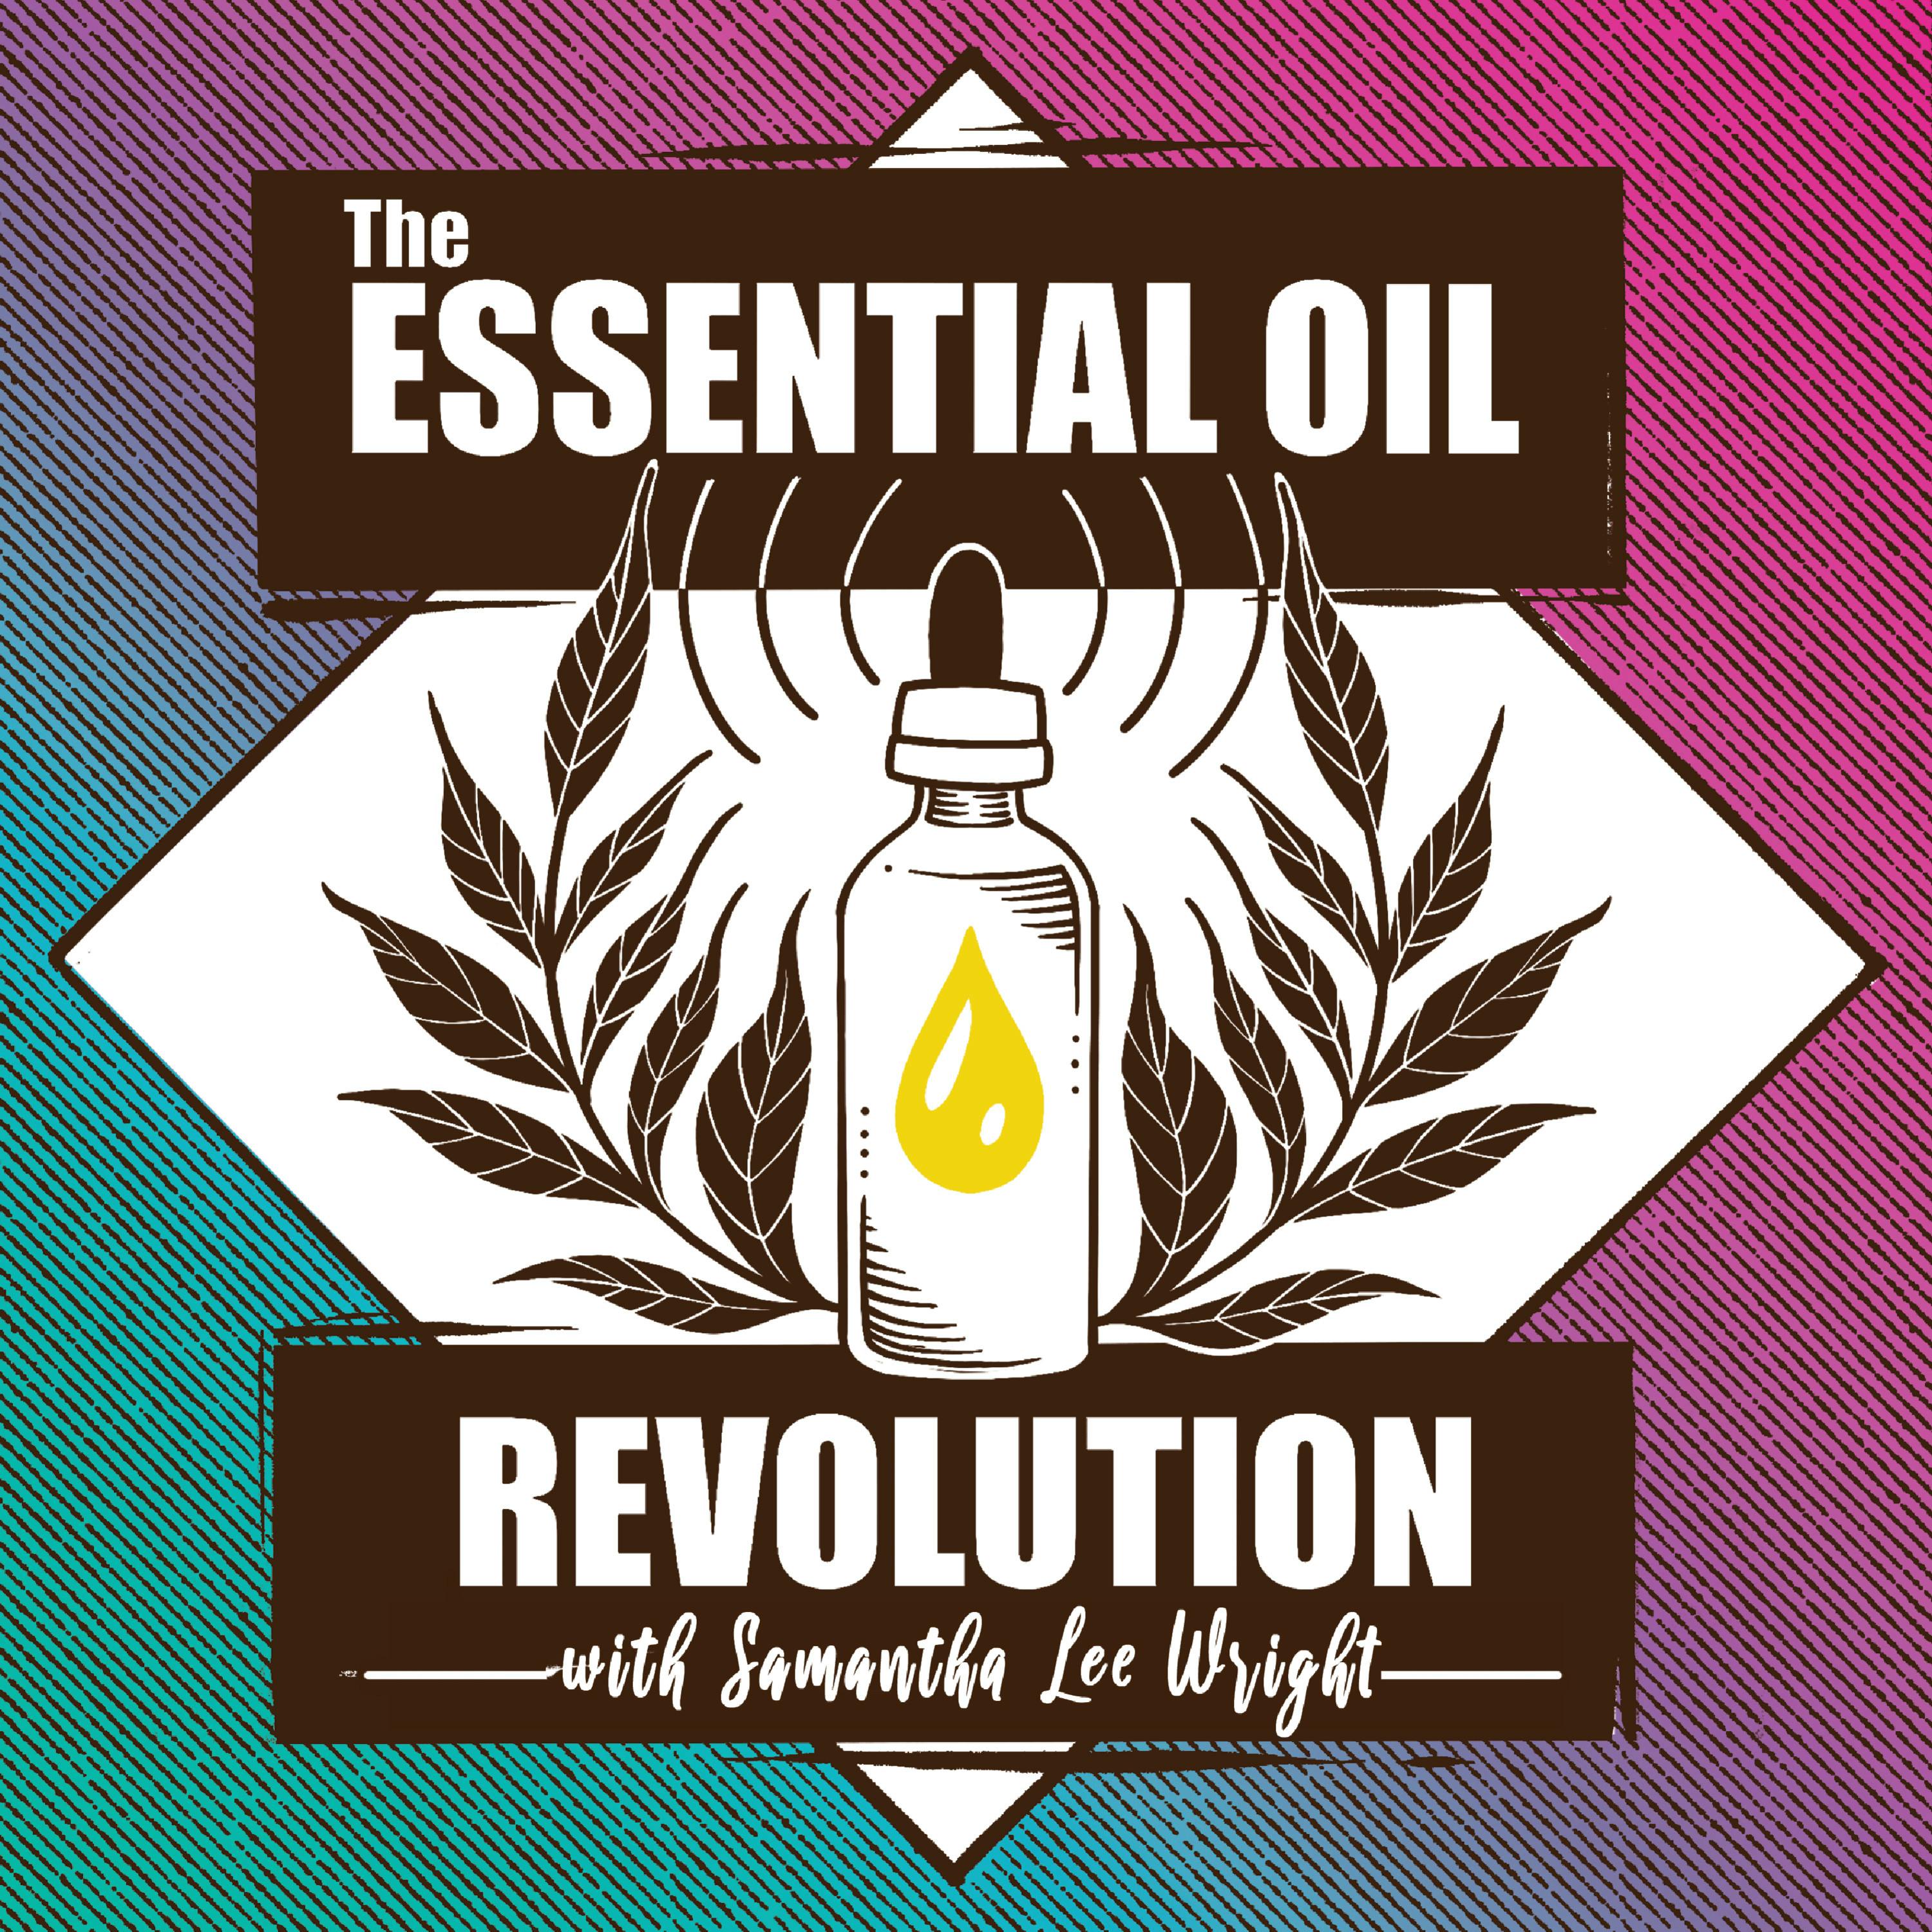 289: The Quorum Sensing Abilities of Essential Oils w/ Dr. Dan Gubler